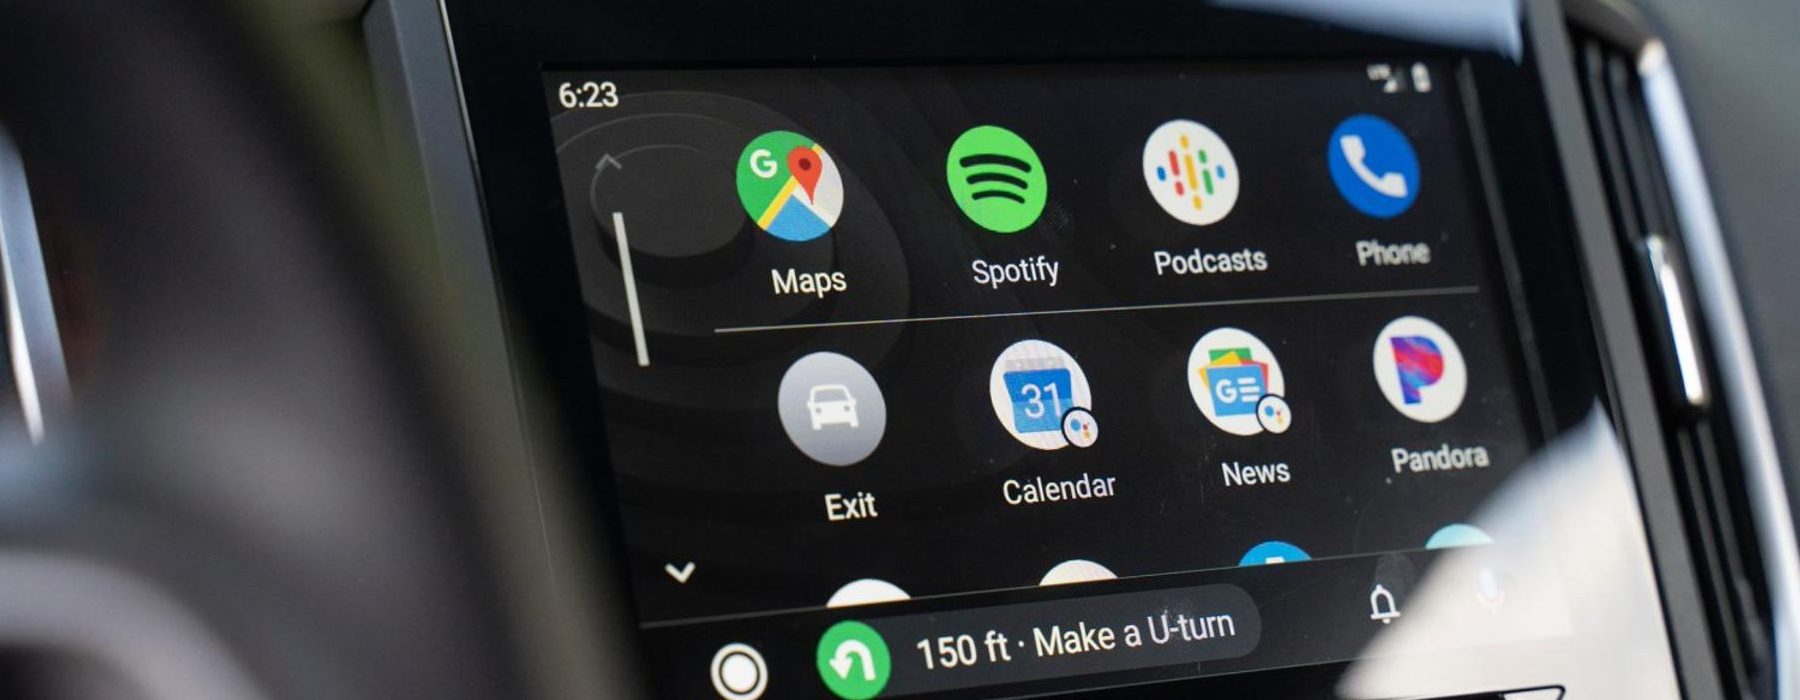 Android Auto: las mejores aplicaciones para viajar sin distracciones